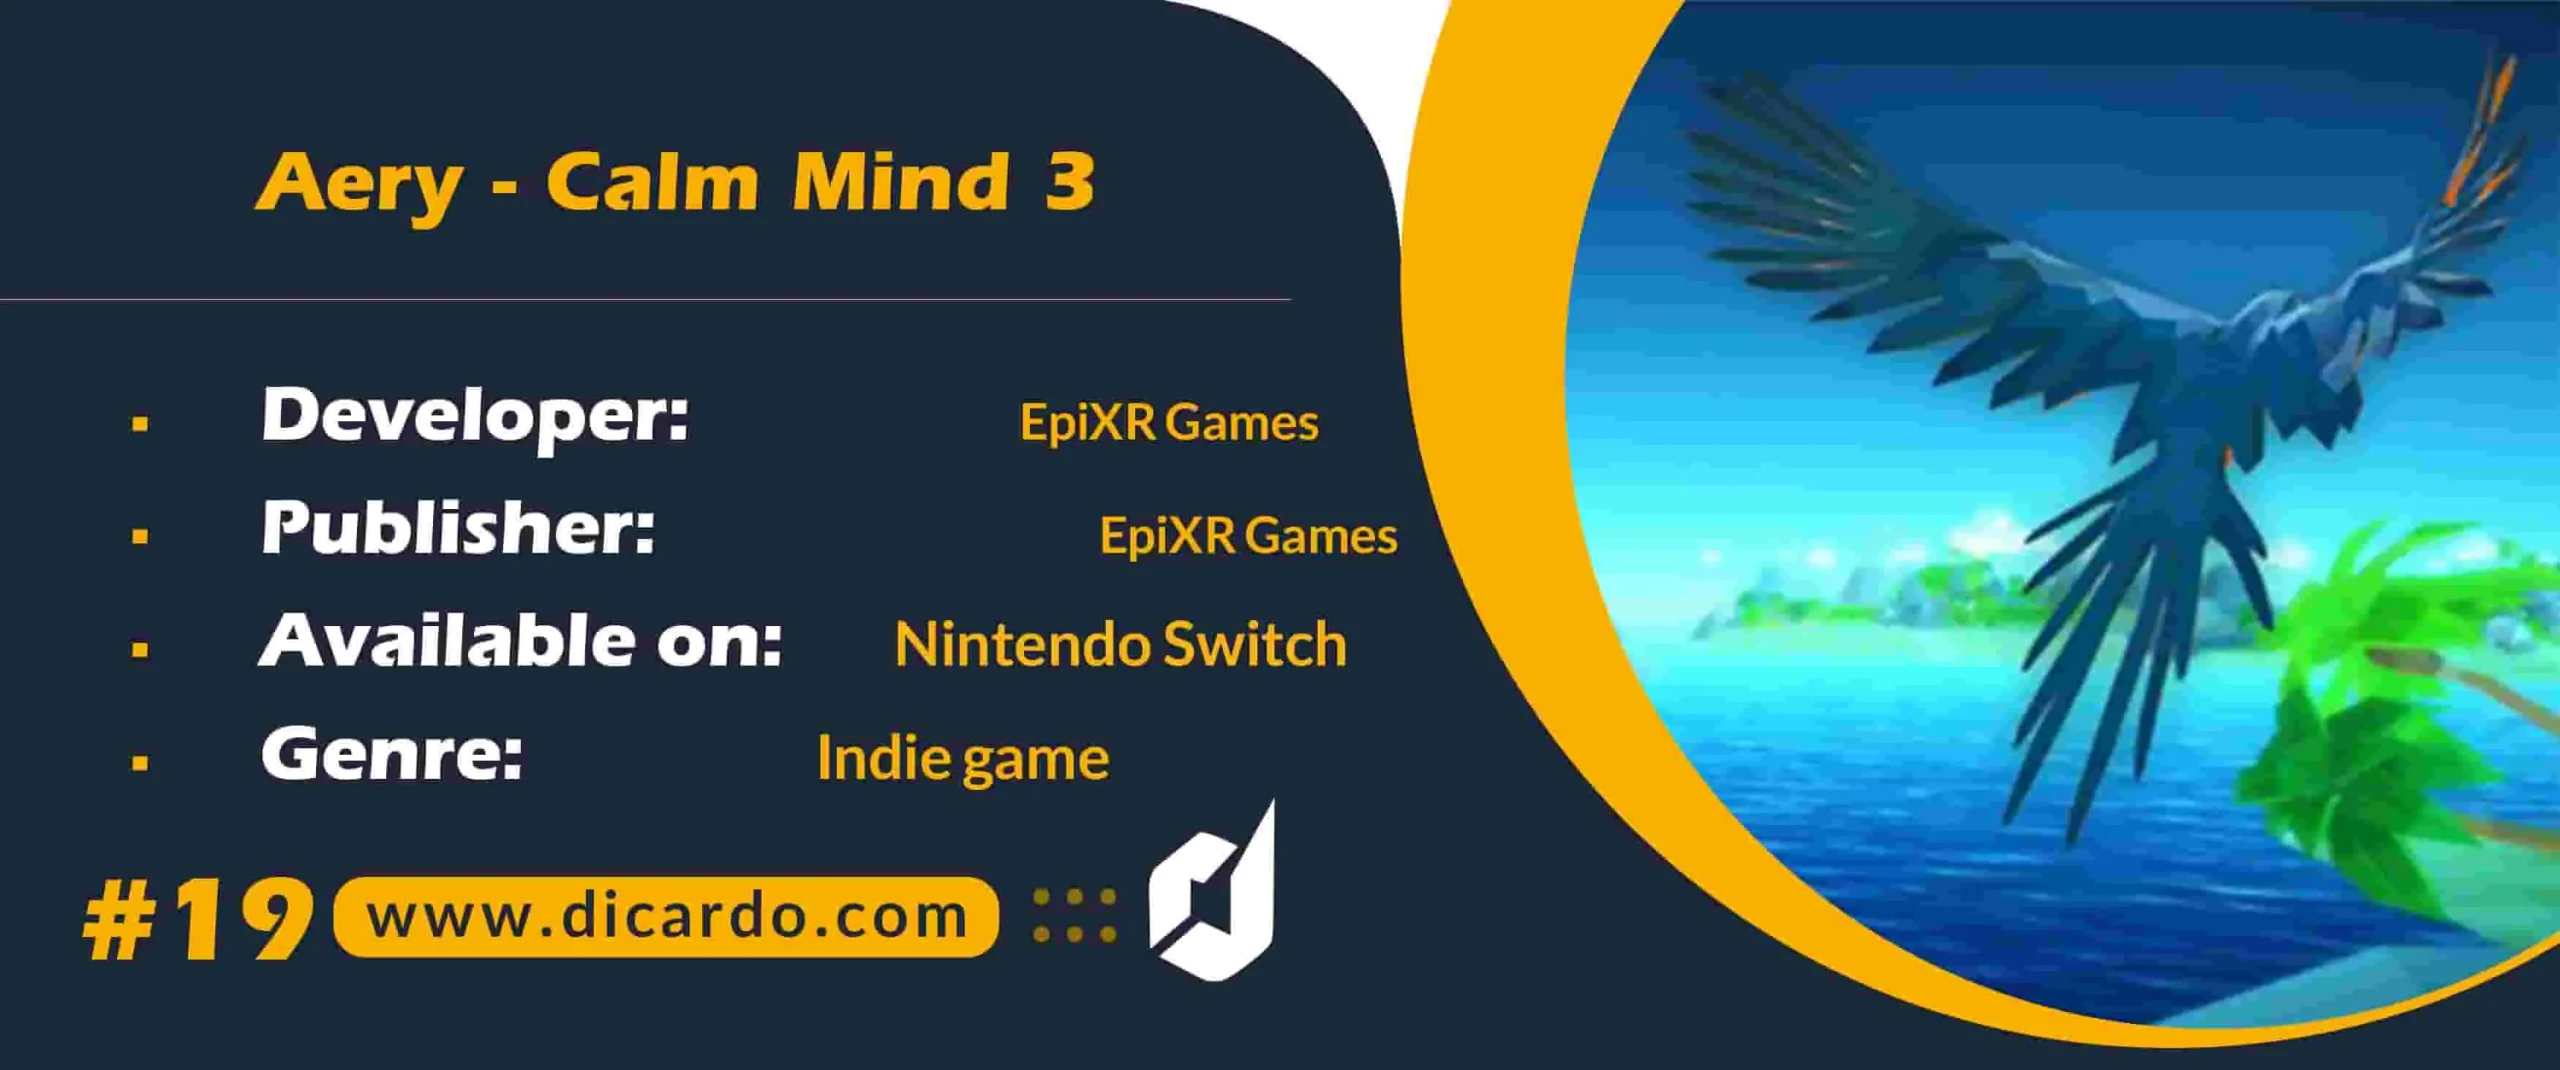 #19 اری کالم مایند 3 Aery - Calm Mind 3 از بازیهای نینتندو سوییچ سال 2023تعاملی